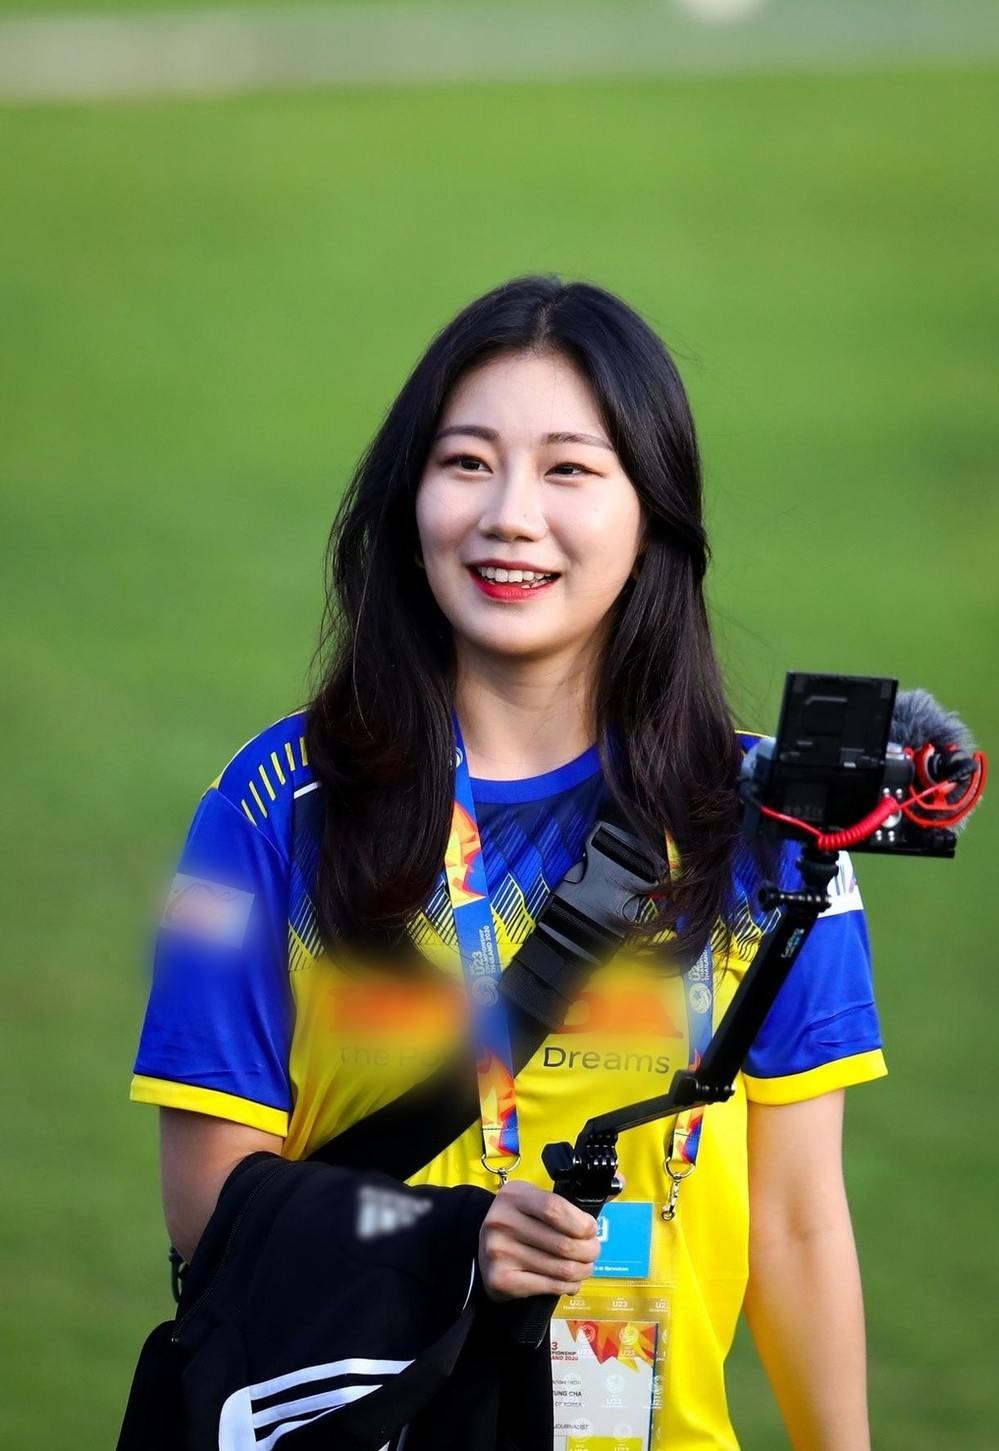 Nữ phóng viên Yoonkyung Cha được đài truyền hình KBS cử tới Thái Lan theo dõi đội tuyển U23 Hàn Quốc và đội tuyển U23 Việt Nam tại VCK U23 Châu Á 2020. Cô nàng gây chú ý khi xuất hiện tại buổi tập của thầy trò HLV Park Hang-seo trước trận ra quân gặp U23 UAE.